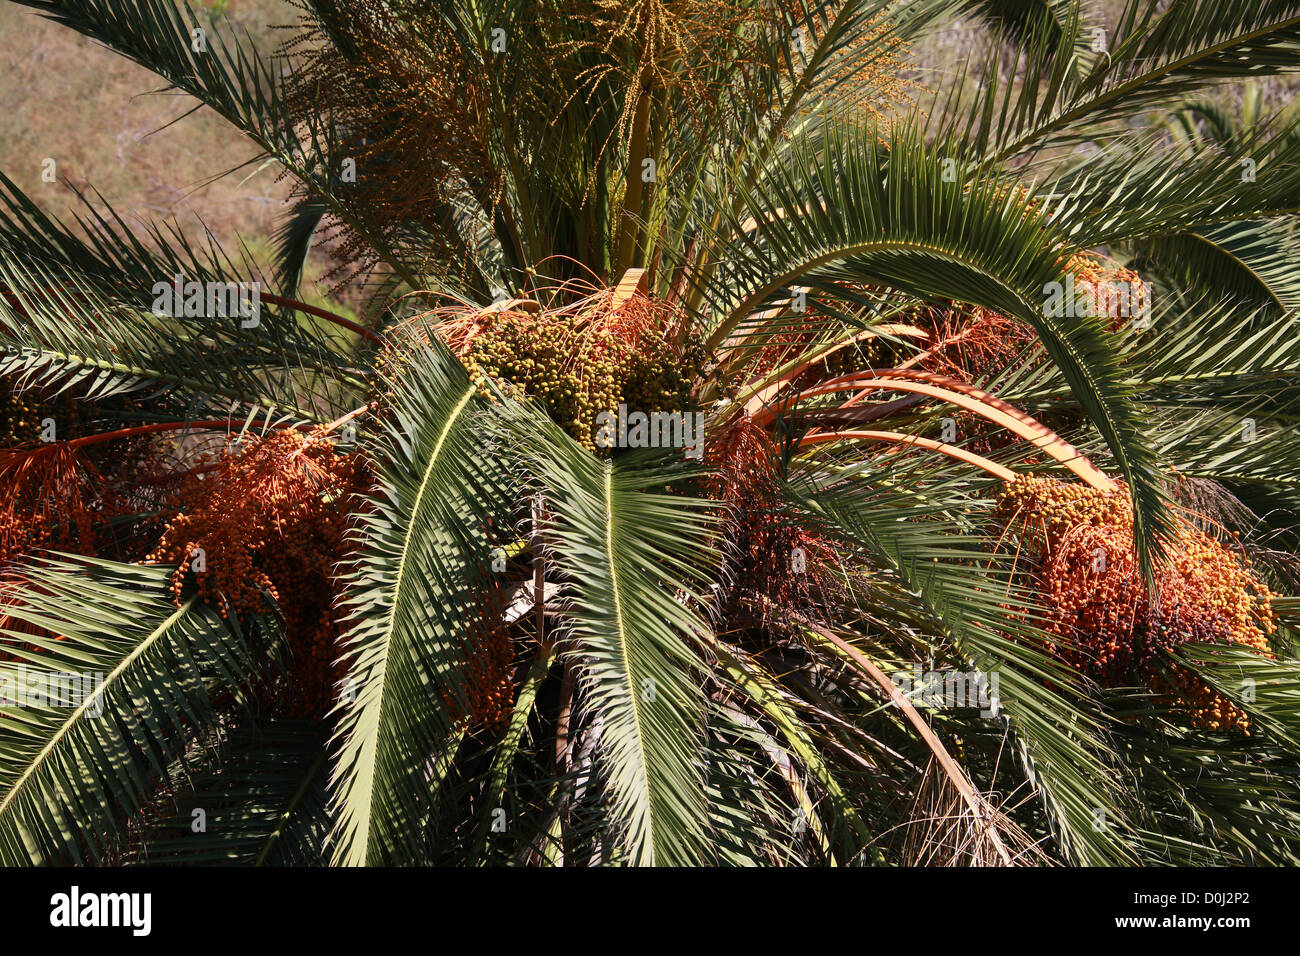 Canary Island Date Palms, Phoenix canariensis, Arecaceae. Parque del Drago (Dragon Park), Icod de los Vinos, Tenerife, Canary Is Stock Photo